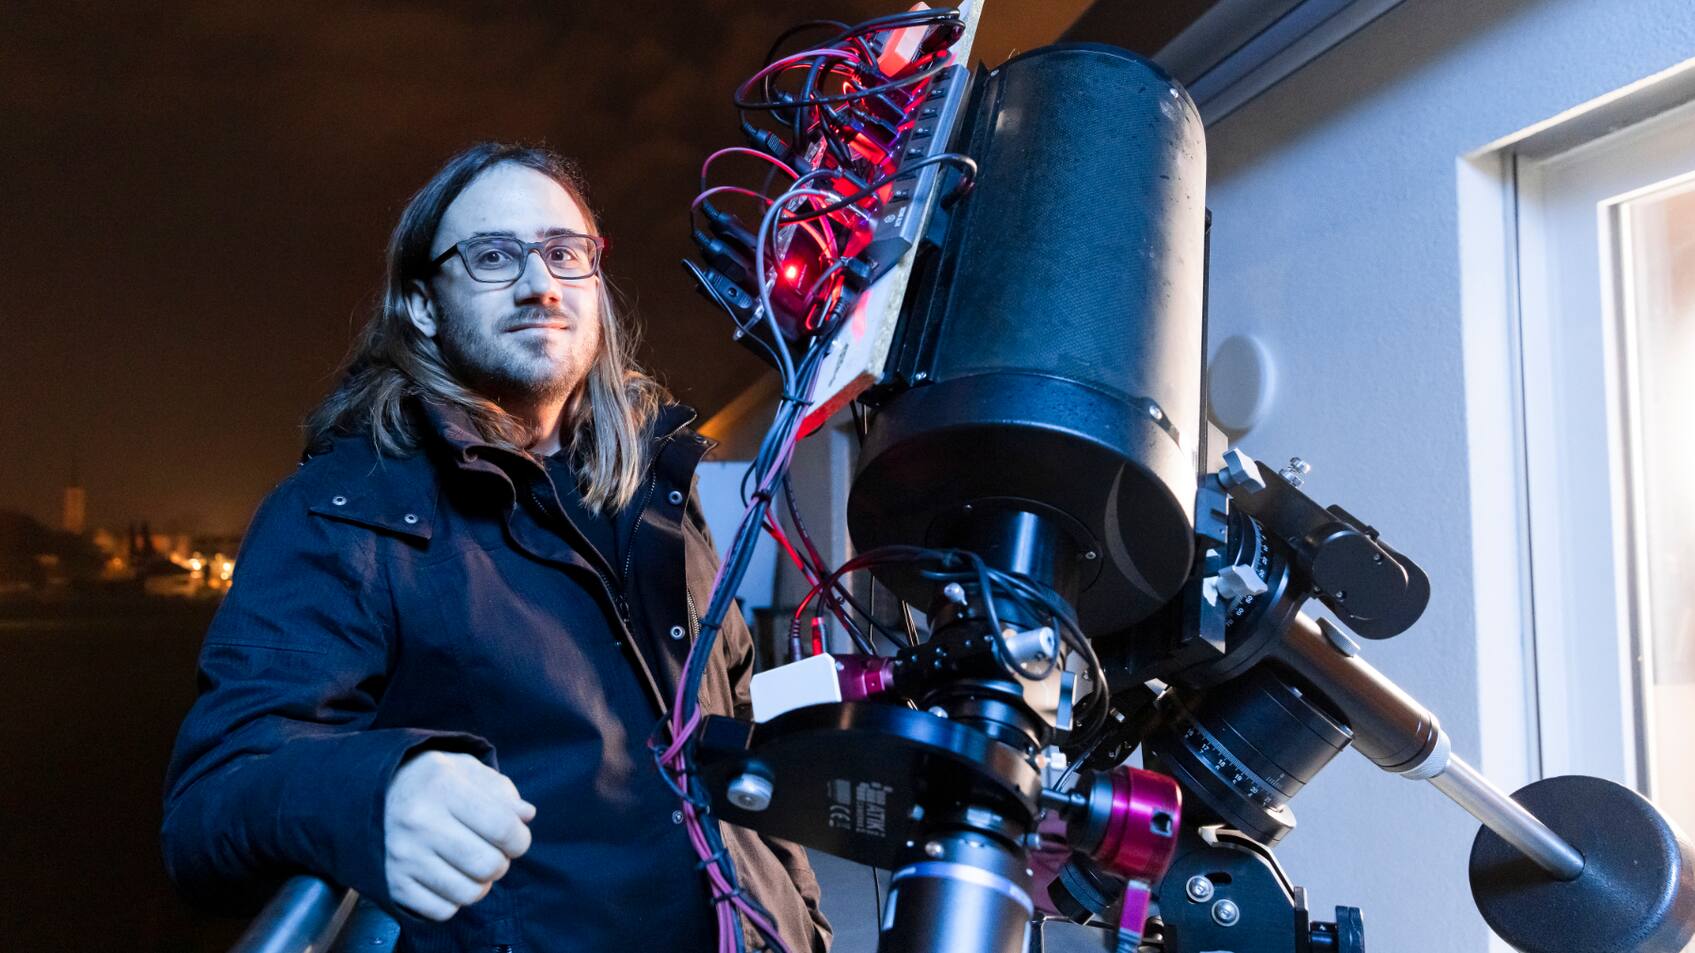 Mit dem Mini- Rechenzentrum auf dem Teleskop kann Tino Heuberger die Aufnahmen programmieren und das Fernrohr, bestückt mit Kamera, arbeiten lassen.